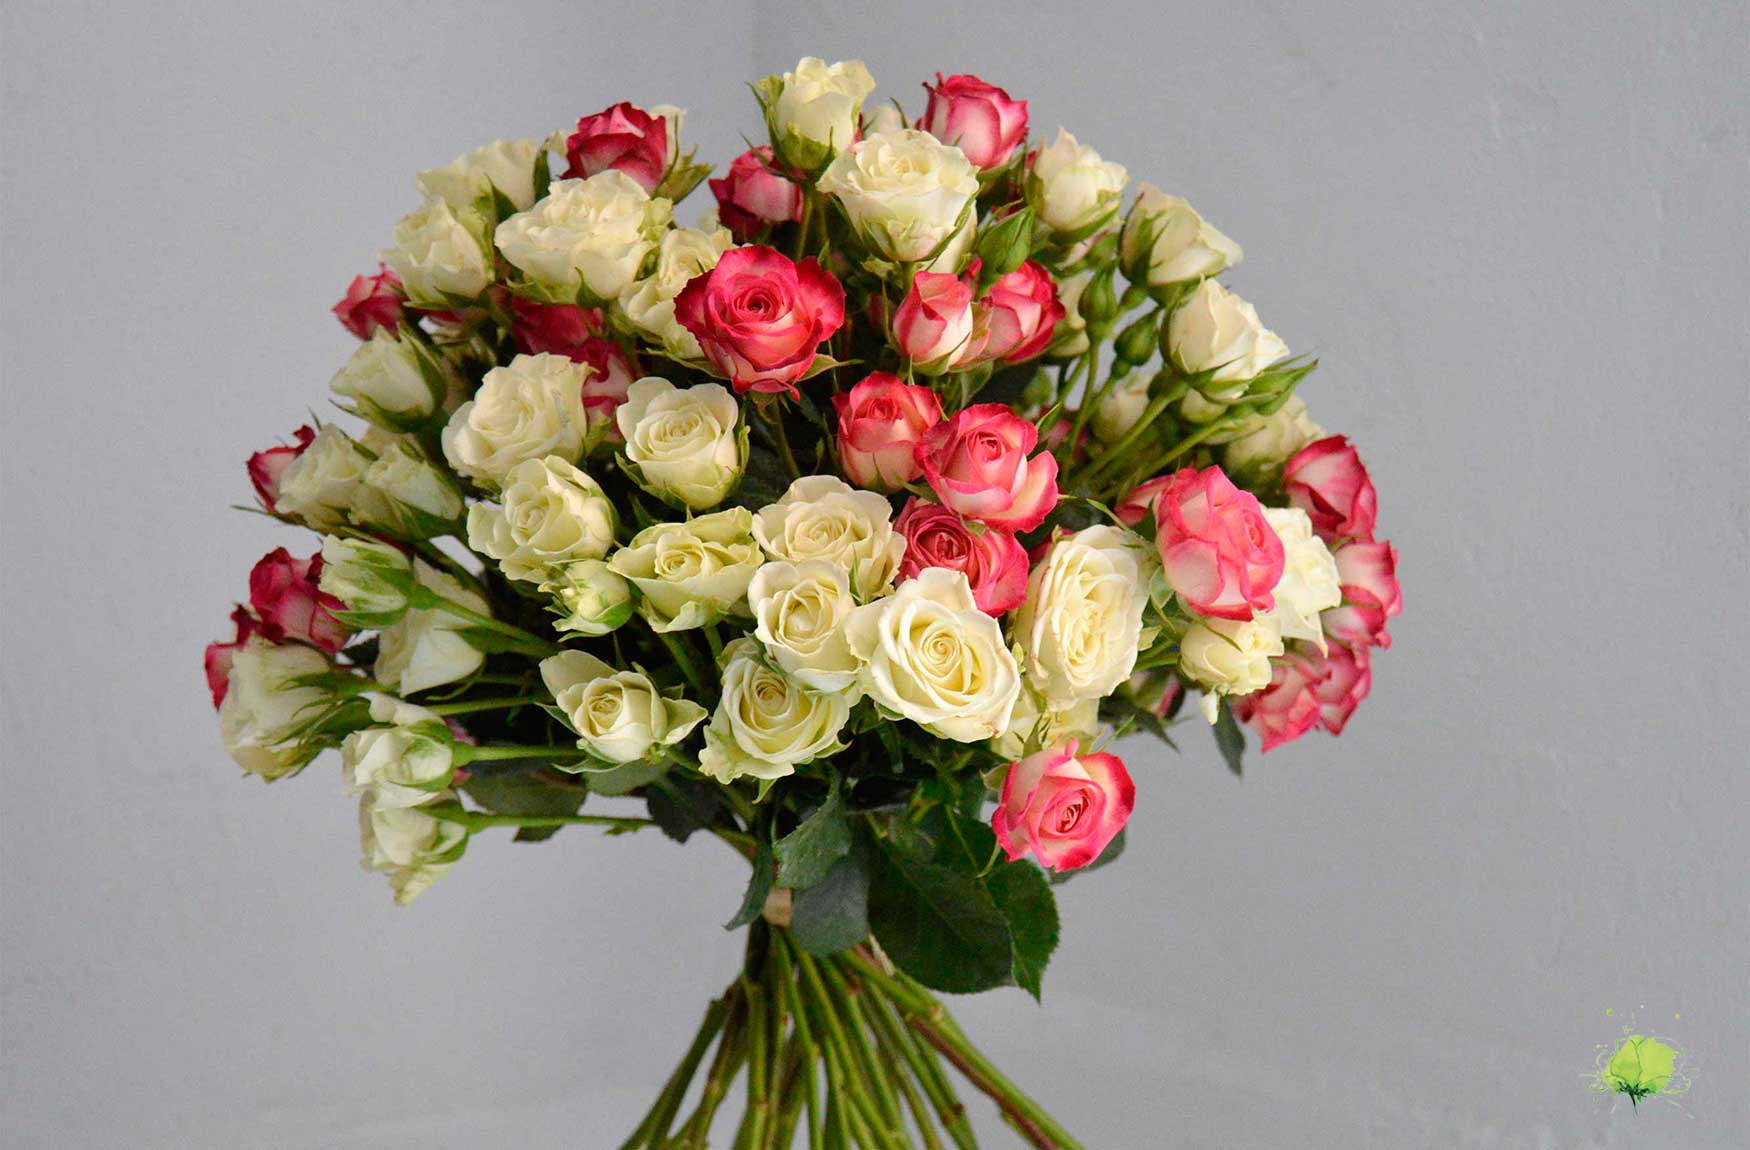 San Valentín - Enamorados - Flores Blumenaria